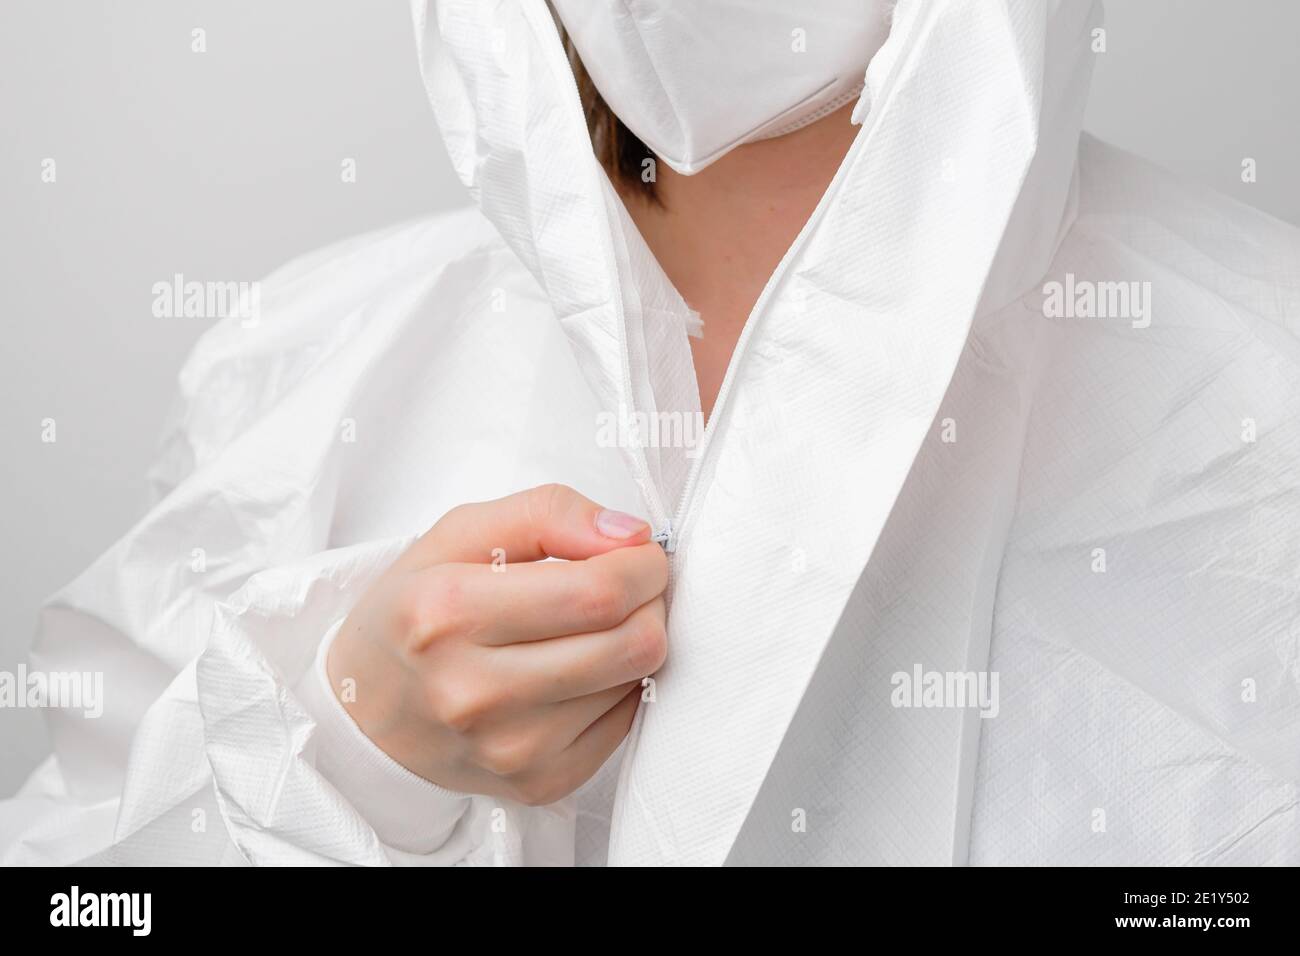 Medico, virologo, scienziato che indossa tuta protettiva contro il rischio biologico DPI o Hazmat, maschera facciale contro il coronavirus, Sars-COV-2, covid 19 Foto Stock